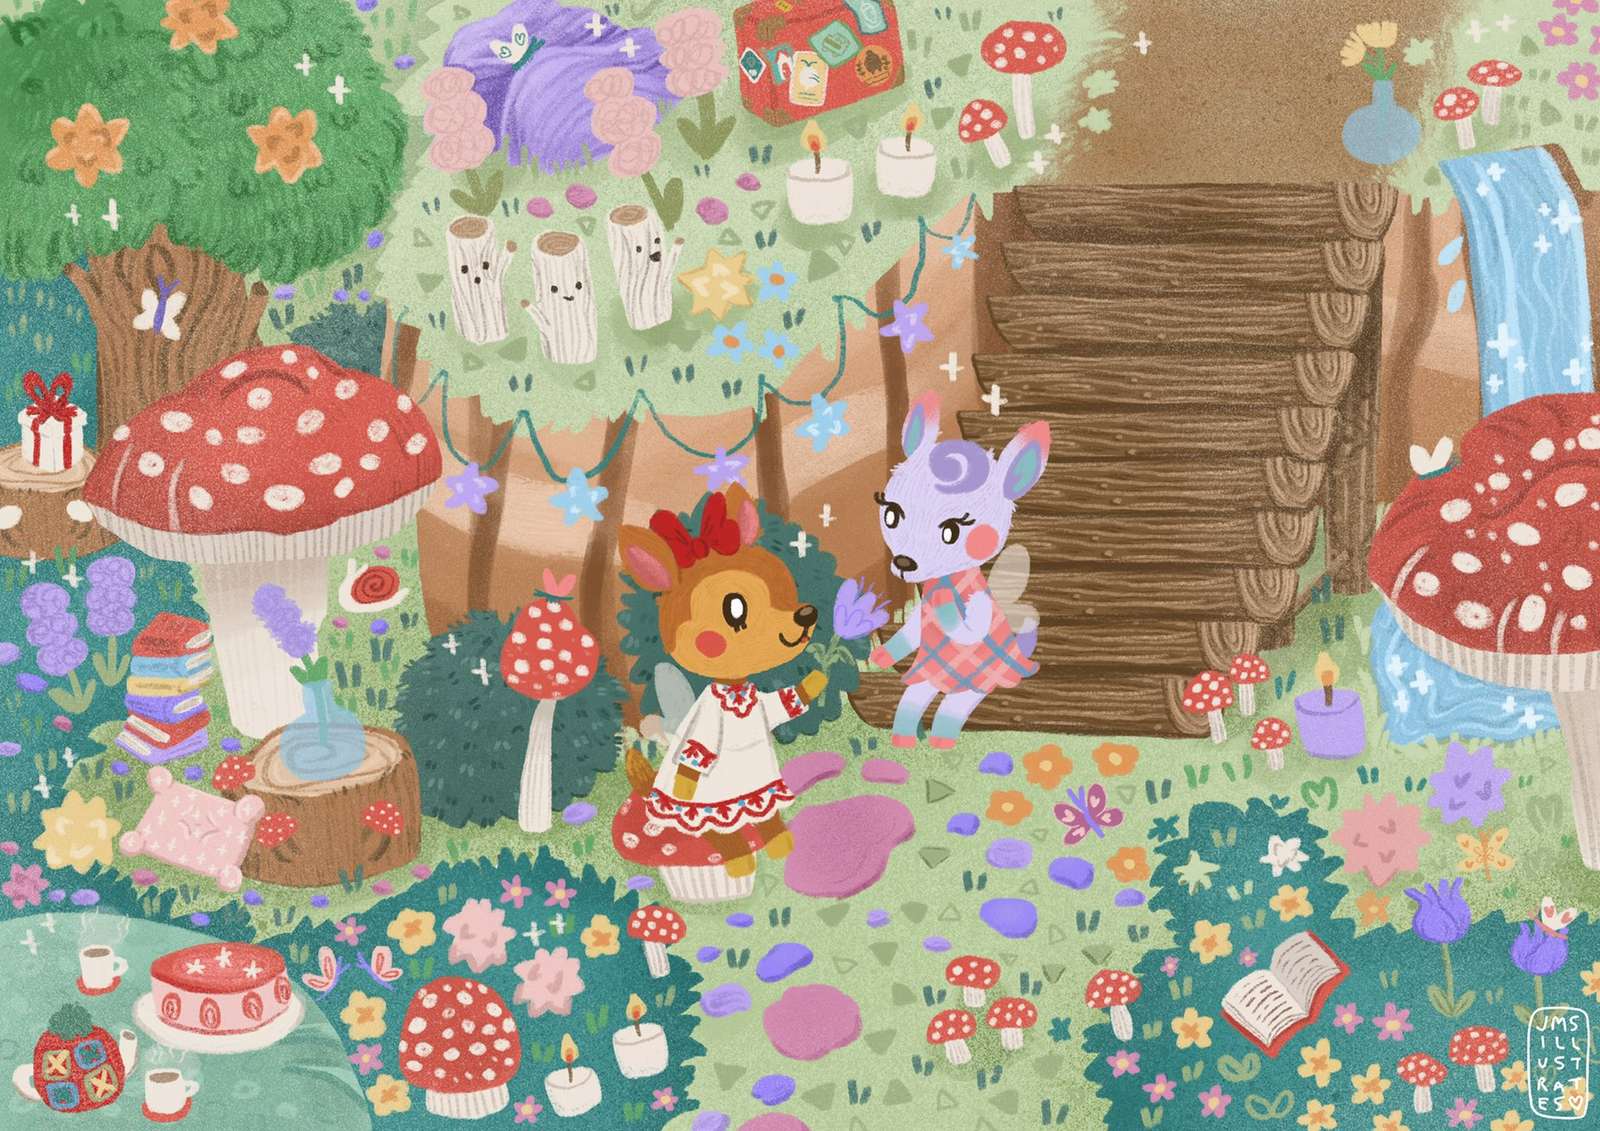 Fauna y arte de Diana (Animal Crossing New Horizon) puzzle online a partir de foto